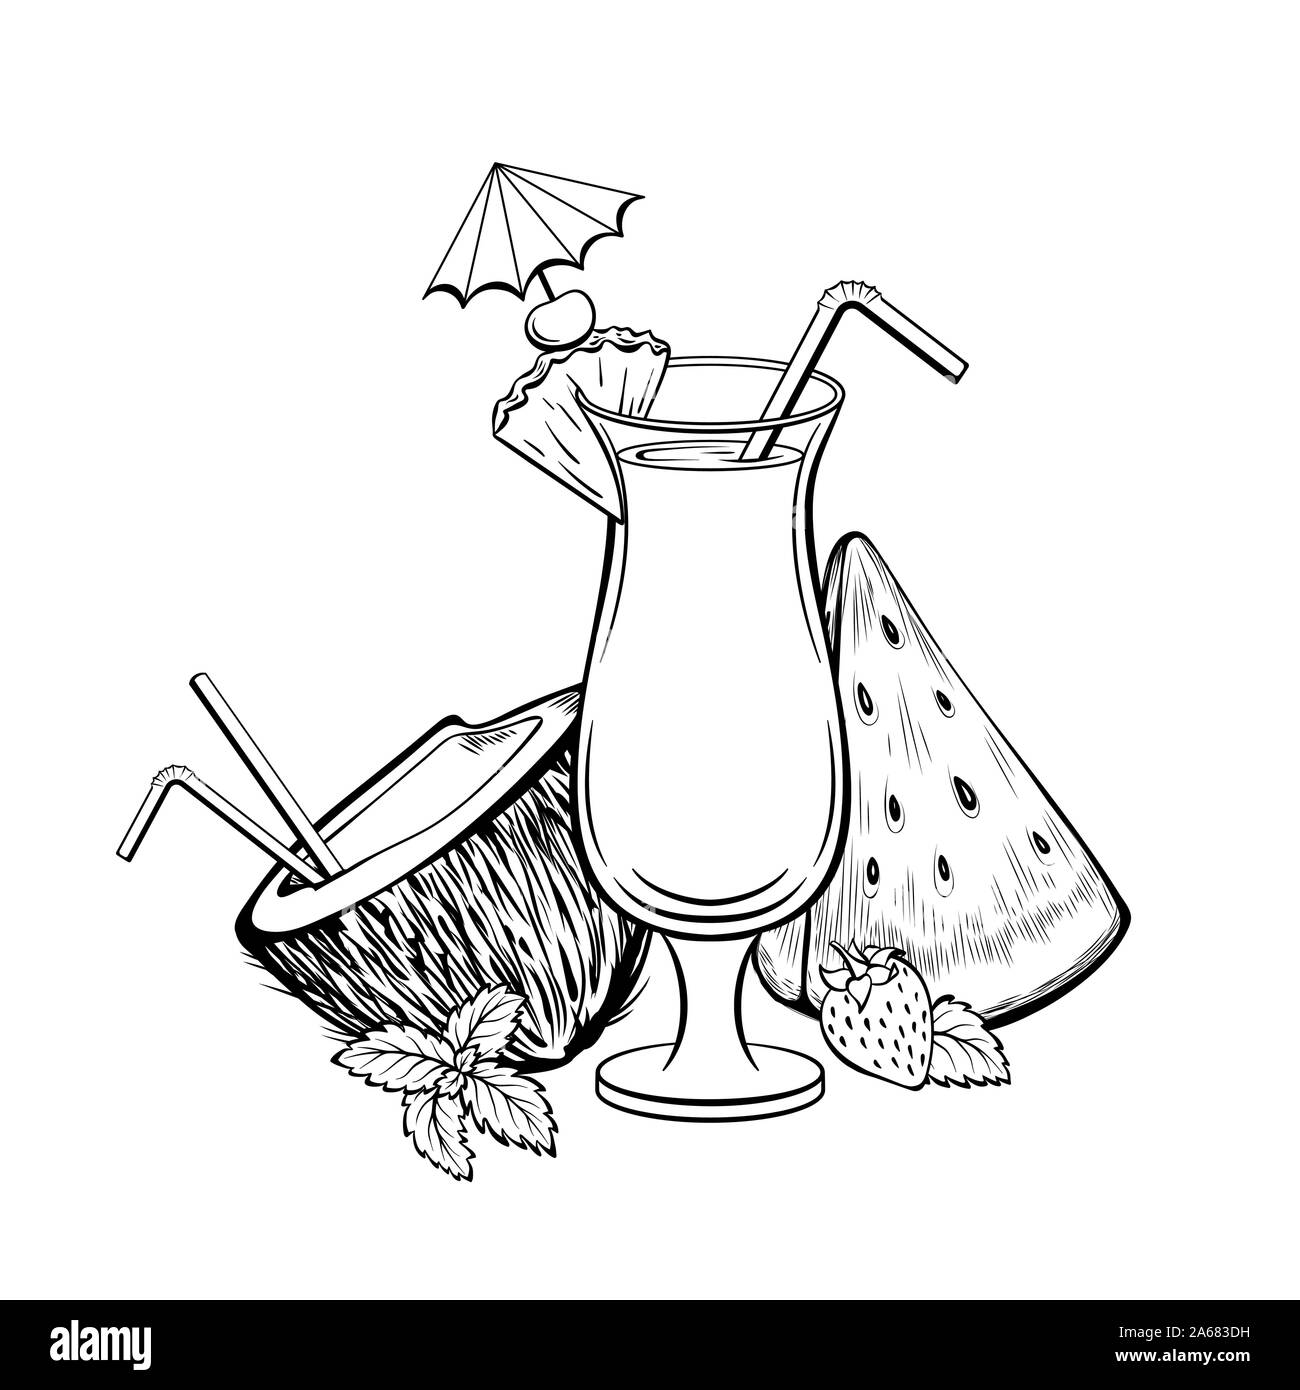 Exotischen cocktail Hand gezeichnet Vector Illustration. Sommer, Freizeit, tropisches Resort Symbol. Leckere Erfrischung mit Stroh und Regenschirm schwarze und weiße Zeichnung. Kokosnuss, Wassermelone und Erdbeere Stock Vektor